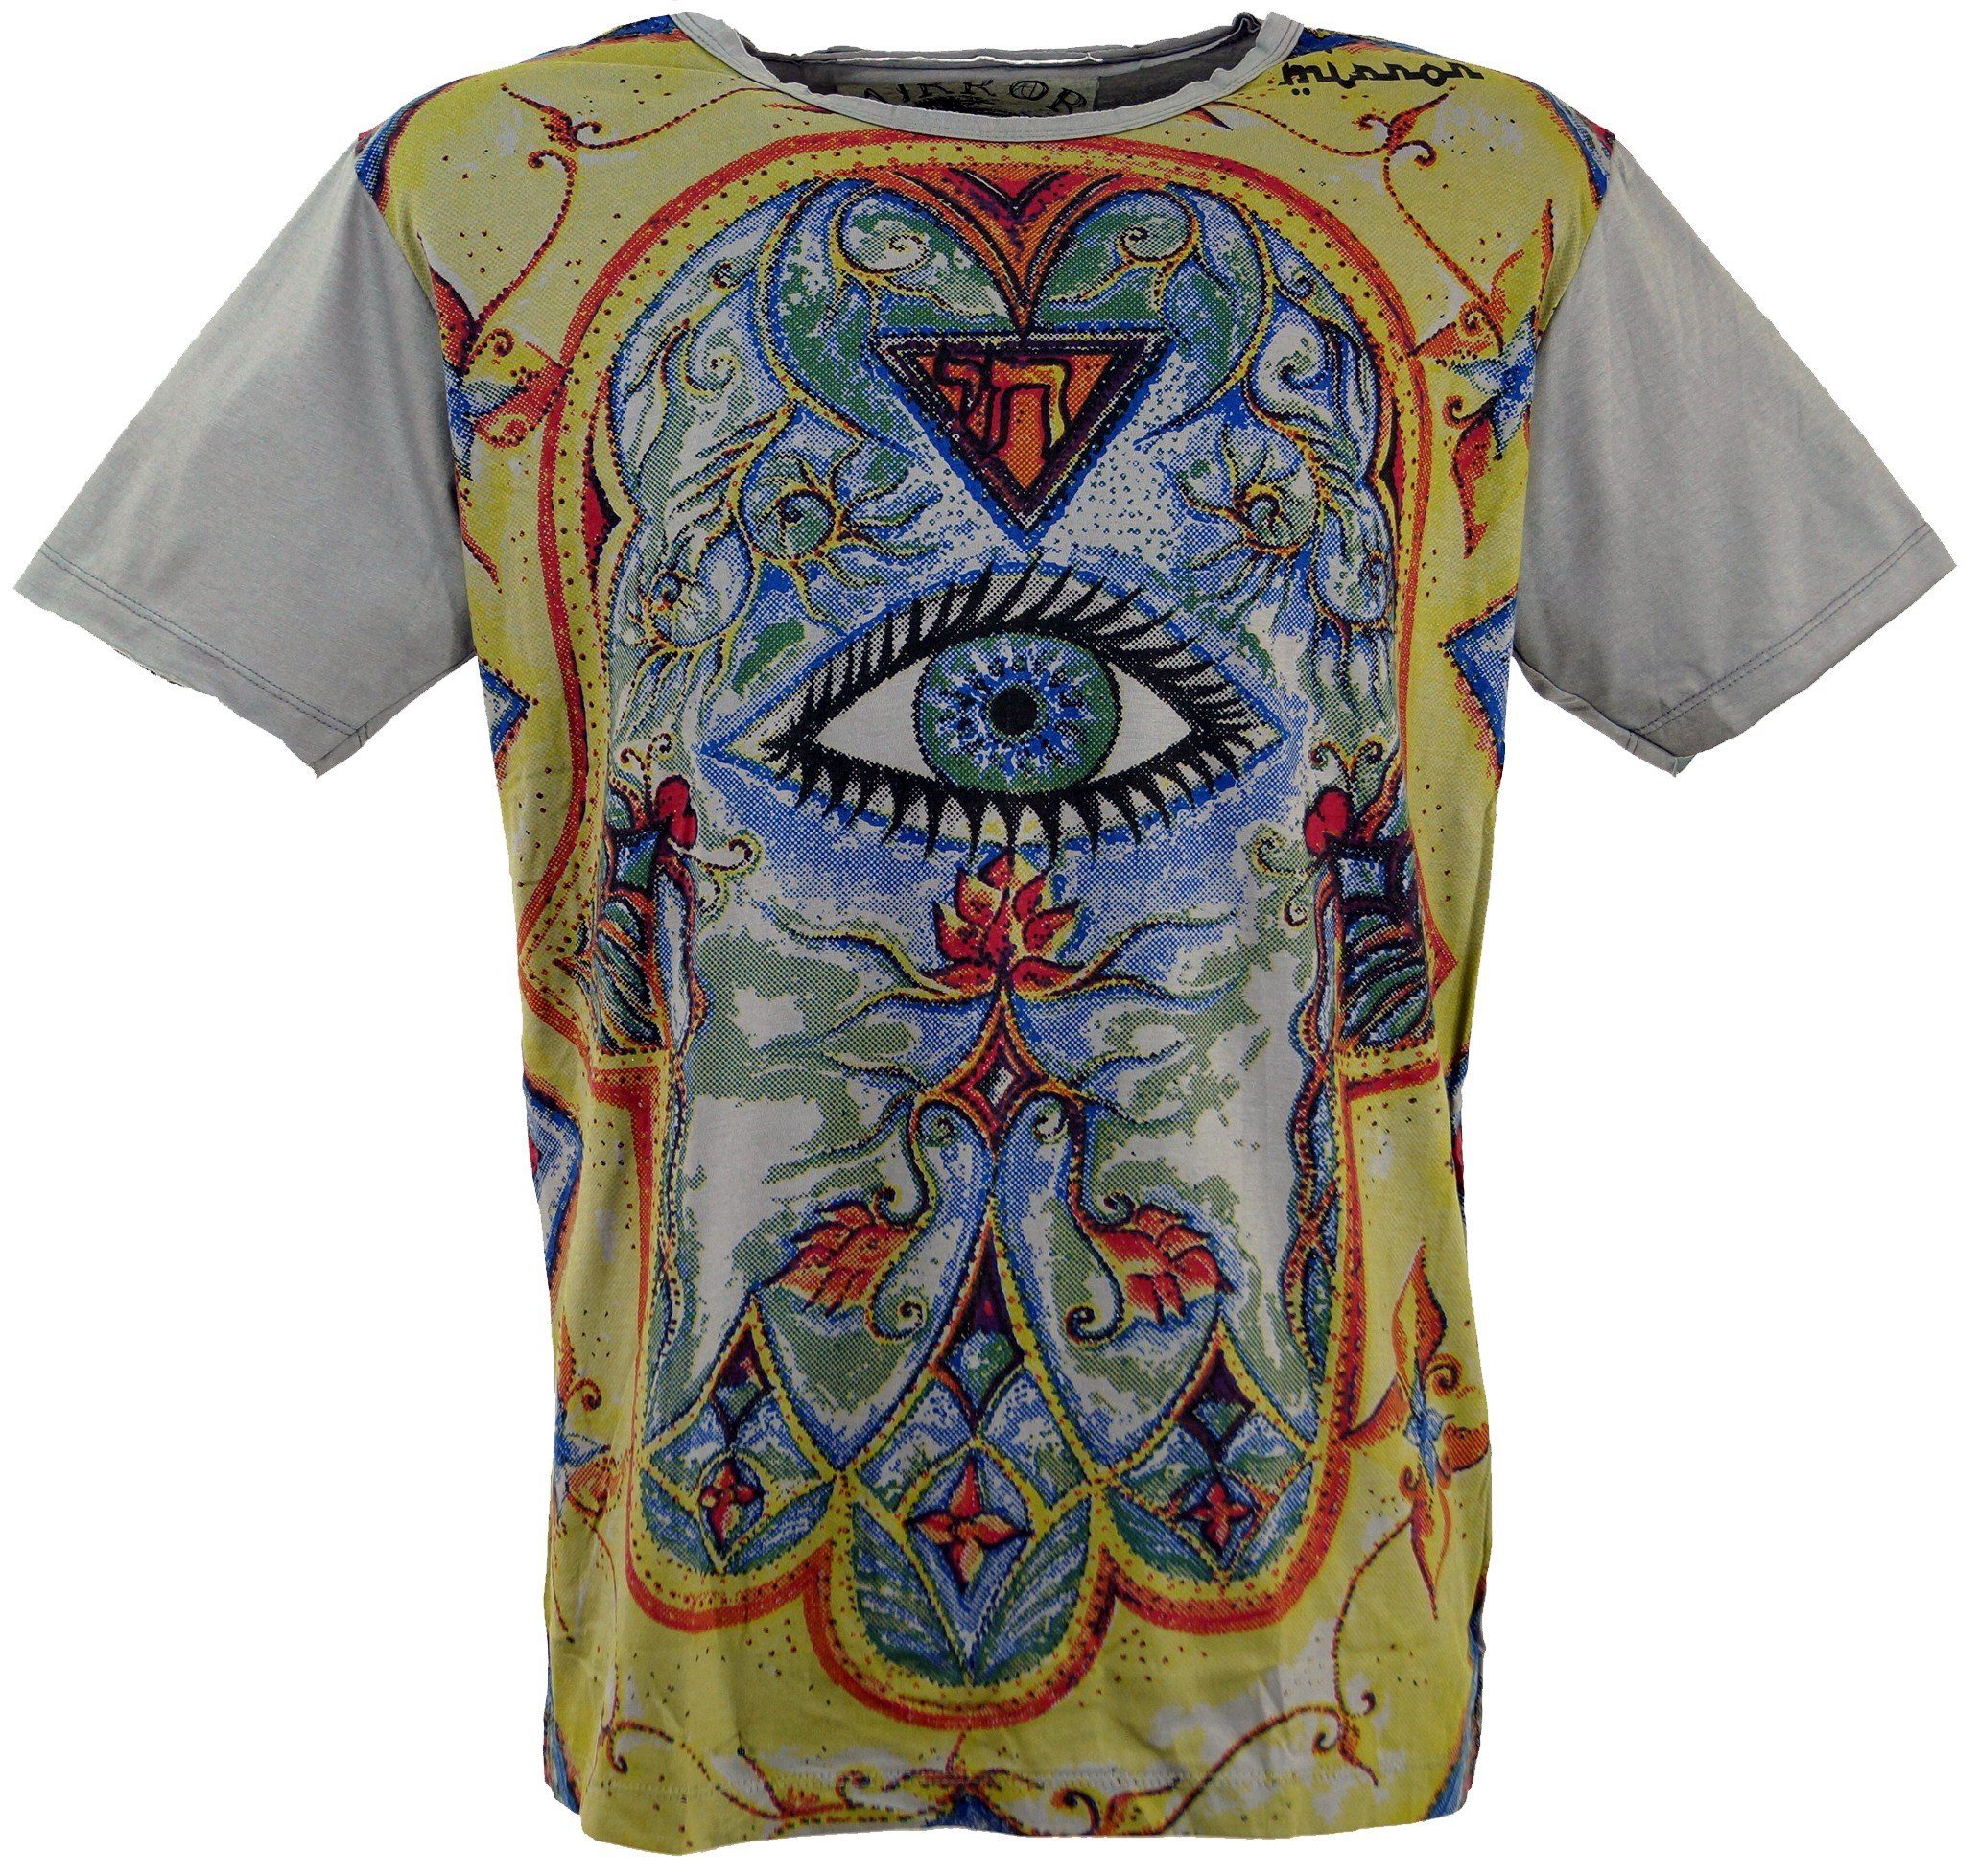 grau alternative Style, Drittes T-Shirt Auge Auge Mirror Bekleidung / - T-Shirt Guru-Shop Festival, Drittes grau Goa